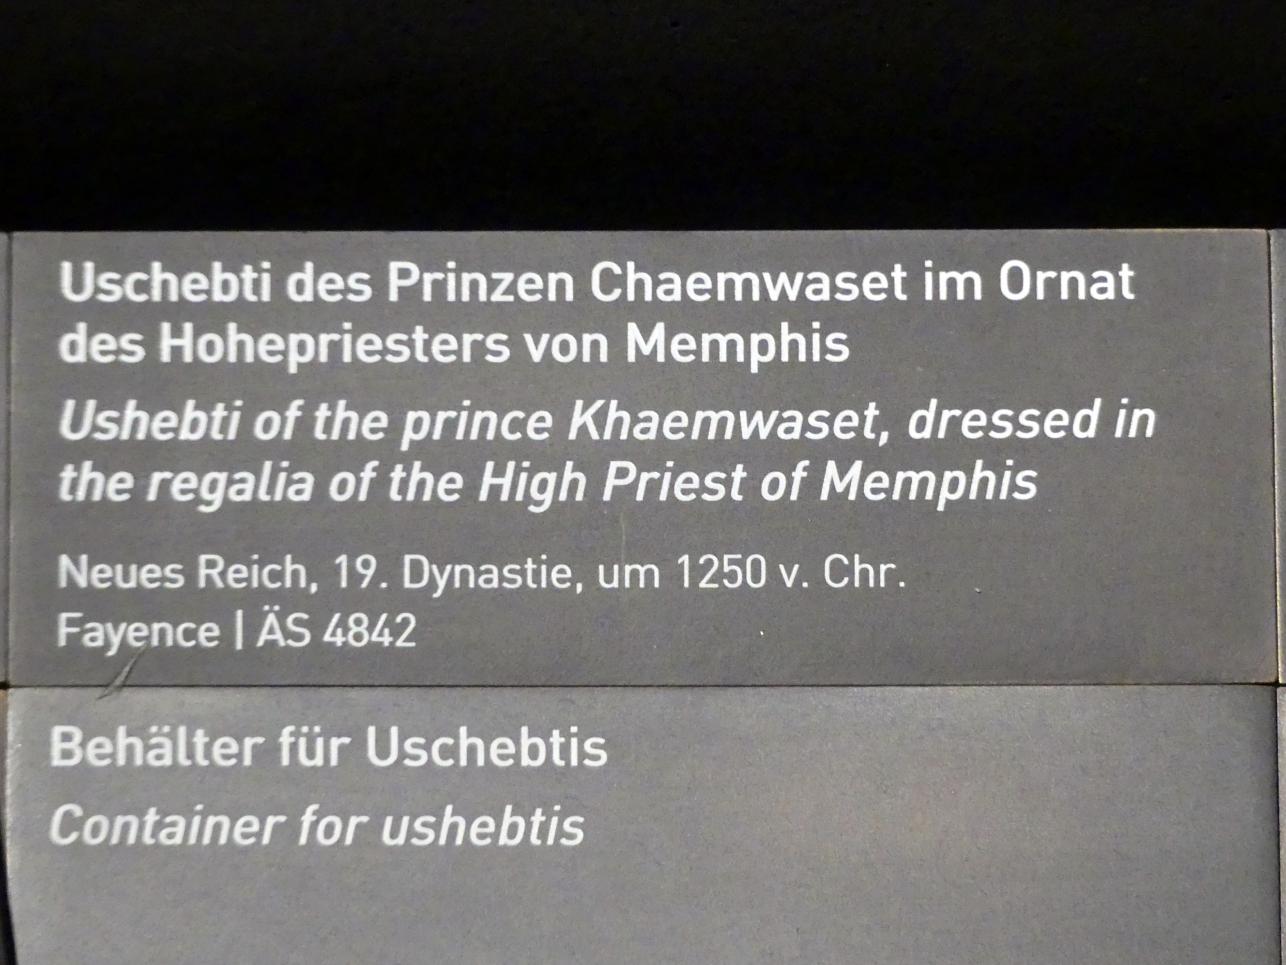 Uschebti des Prinzen Chaemwaset im Ornat des Hohepriesters von Memphis, 19. Dynastie, 953 - 887 v. Chr., 1250 v. Chr., Bild 2/2